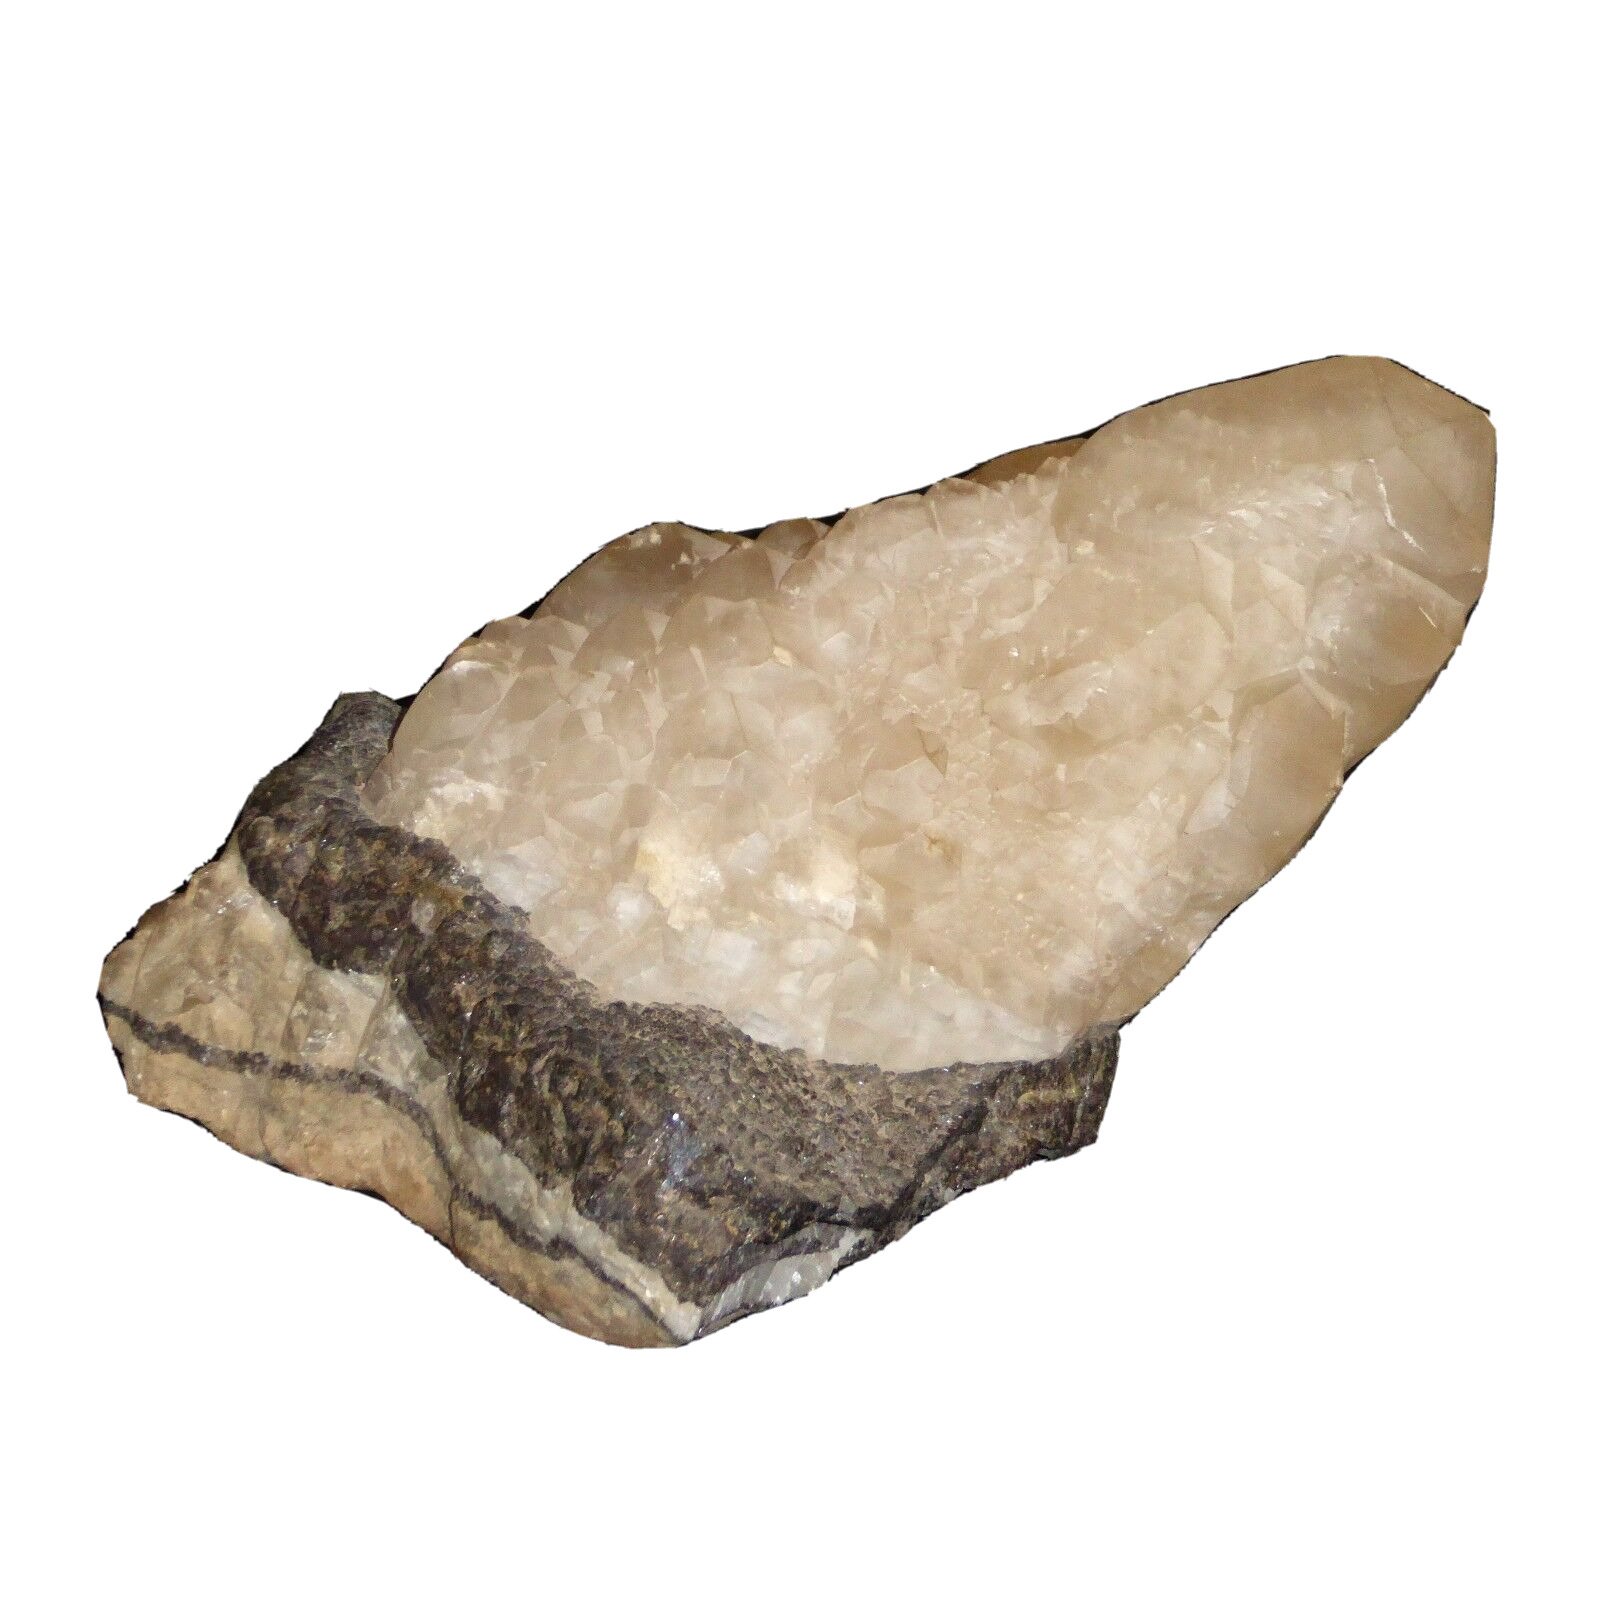 Over 12lb Natural White Quartz Crystal Cluster Embedded in Rock Base 5520g 